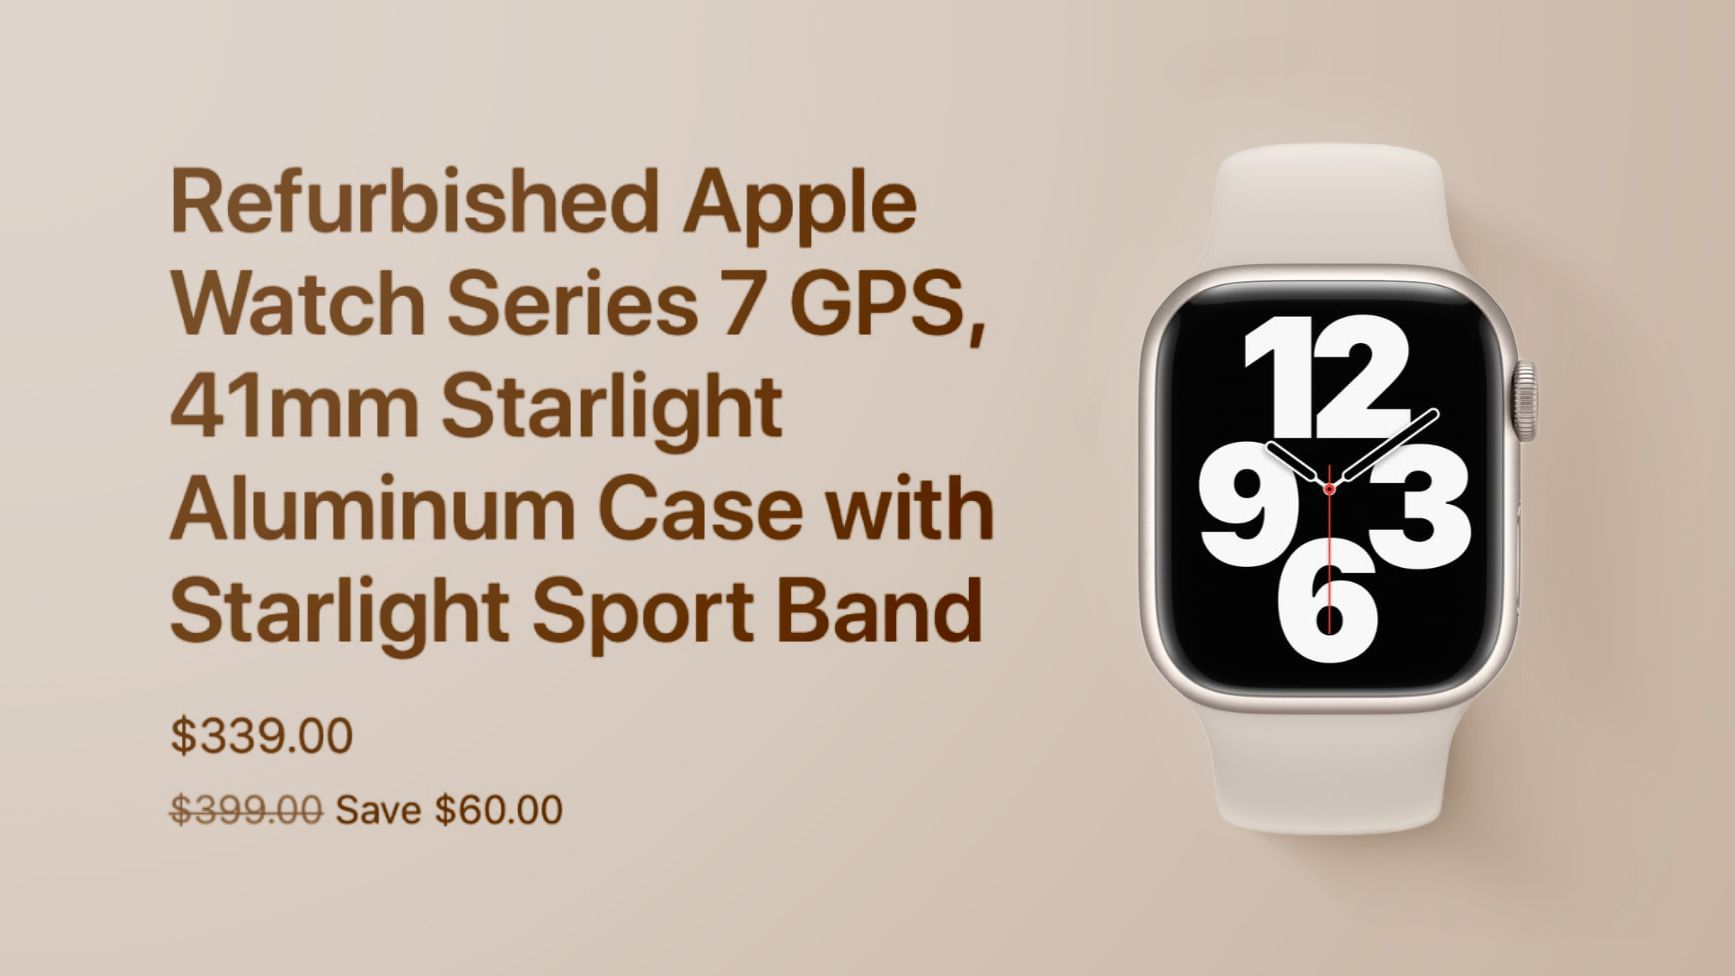 Apple Now Selling Refurbished Apple Watch Series 7 Models - macrumors.com